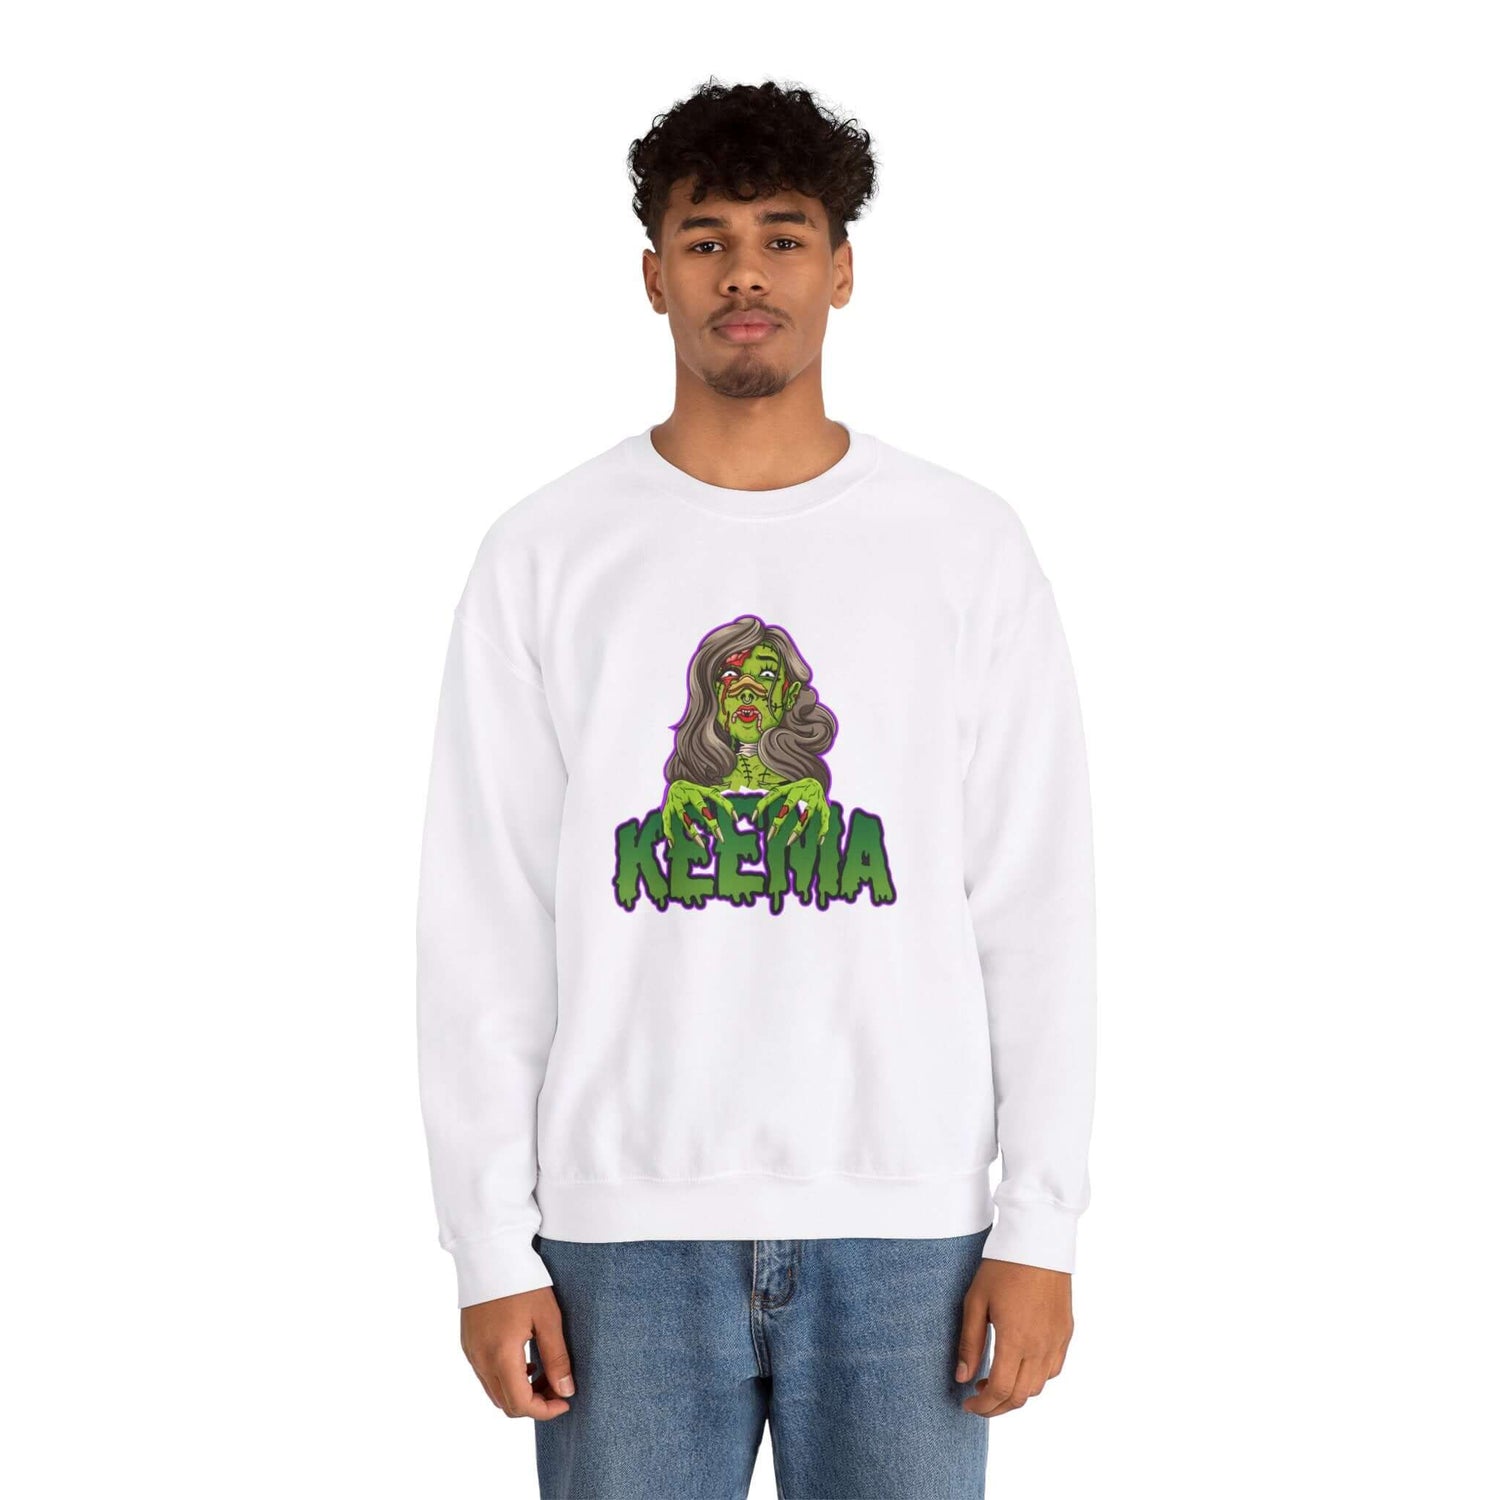 Limited Edition Keema Sweatshirt